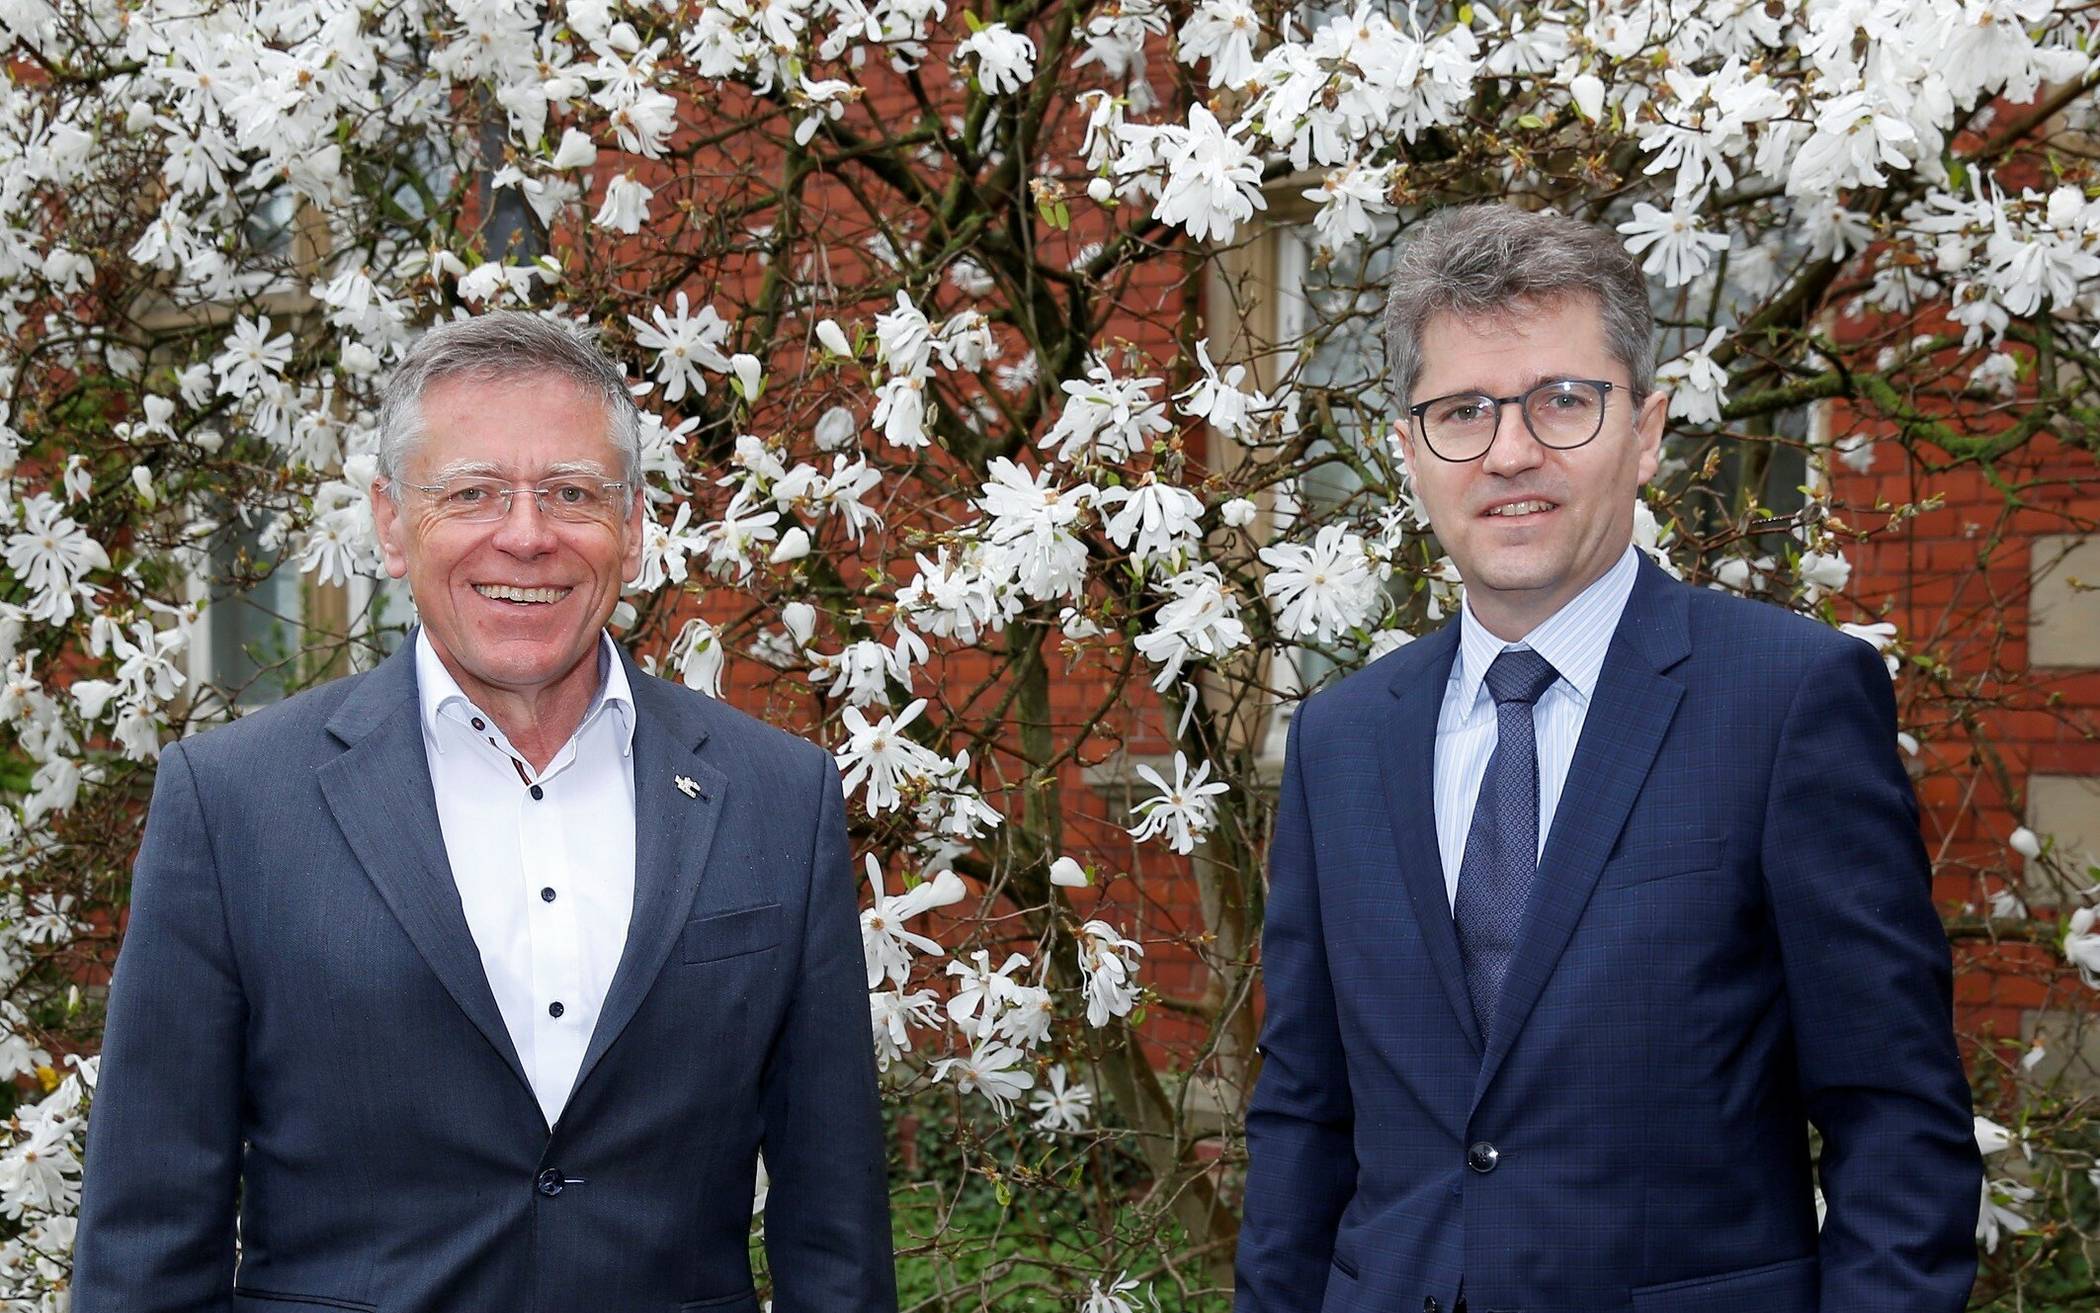  Antrittsbesuch: Landrat Hans-Jürgen Petrauschke (links) und Dr. Martin Kreuels, der neue Leitende Oberstaatsanwalt in Mönchengladbach, am Ständehaus.  